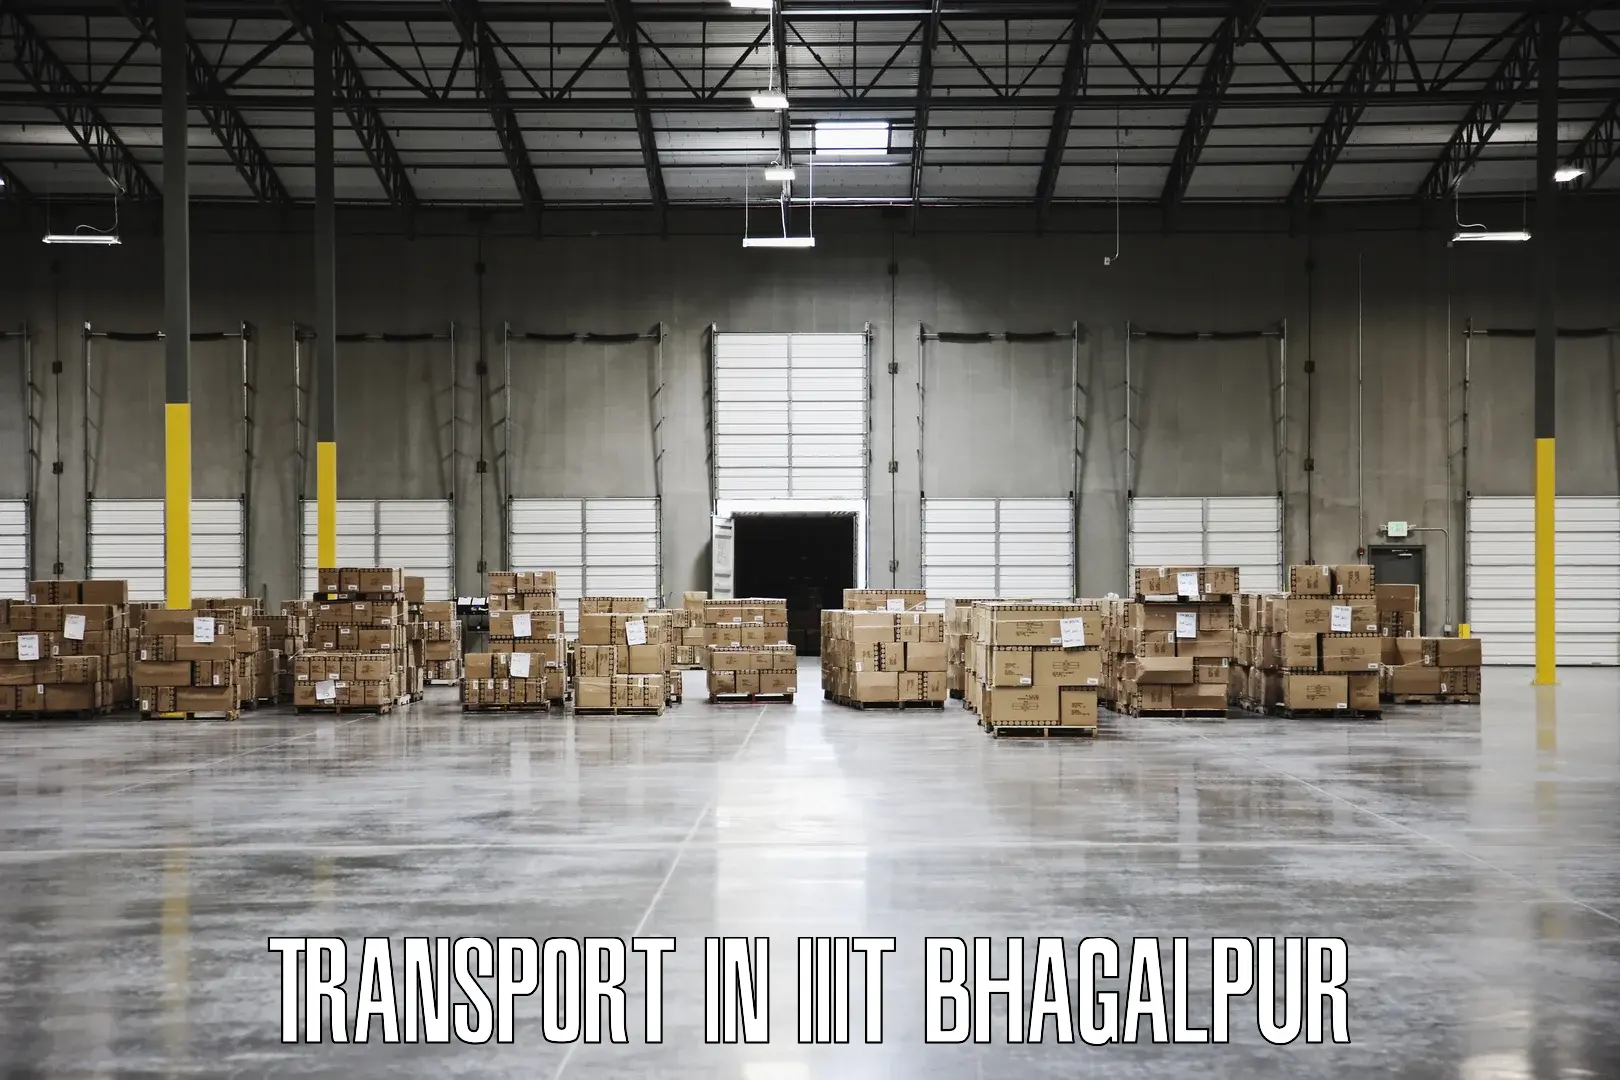 Interstate goods transport in IIIT Bhagalpur